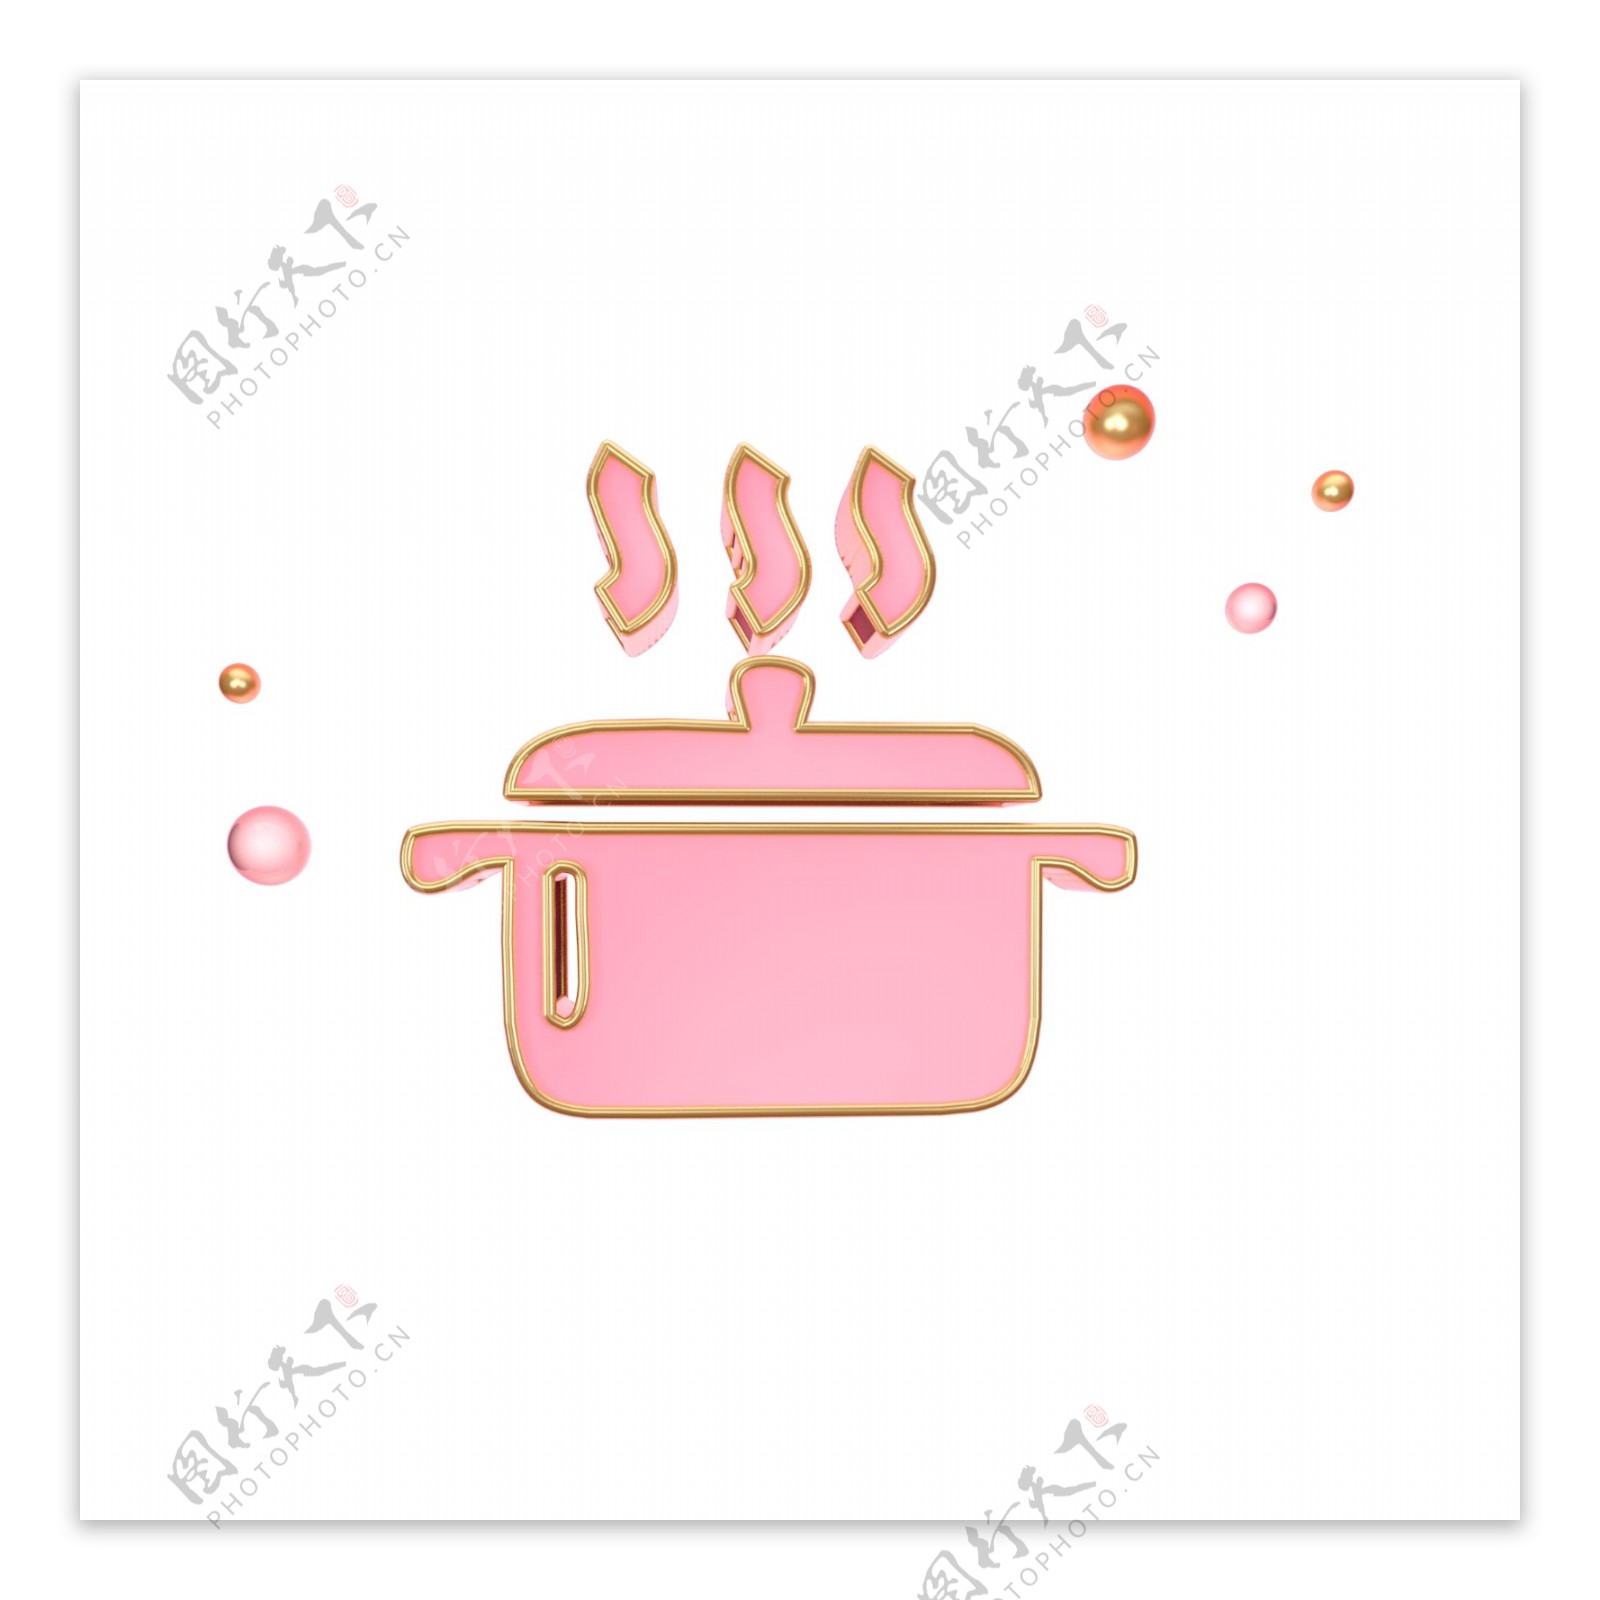 立体粉色蒸锅图标